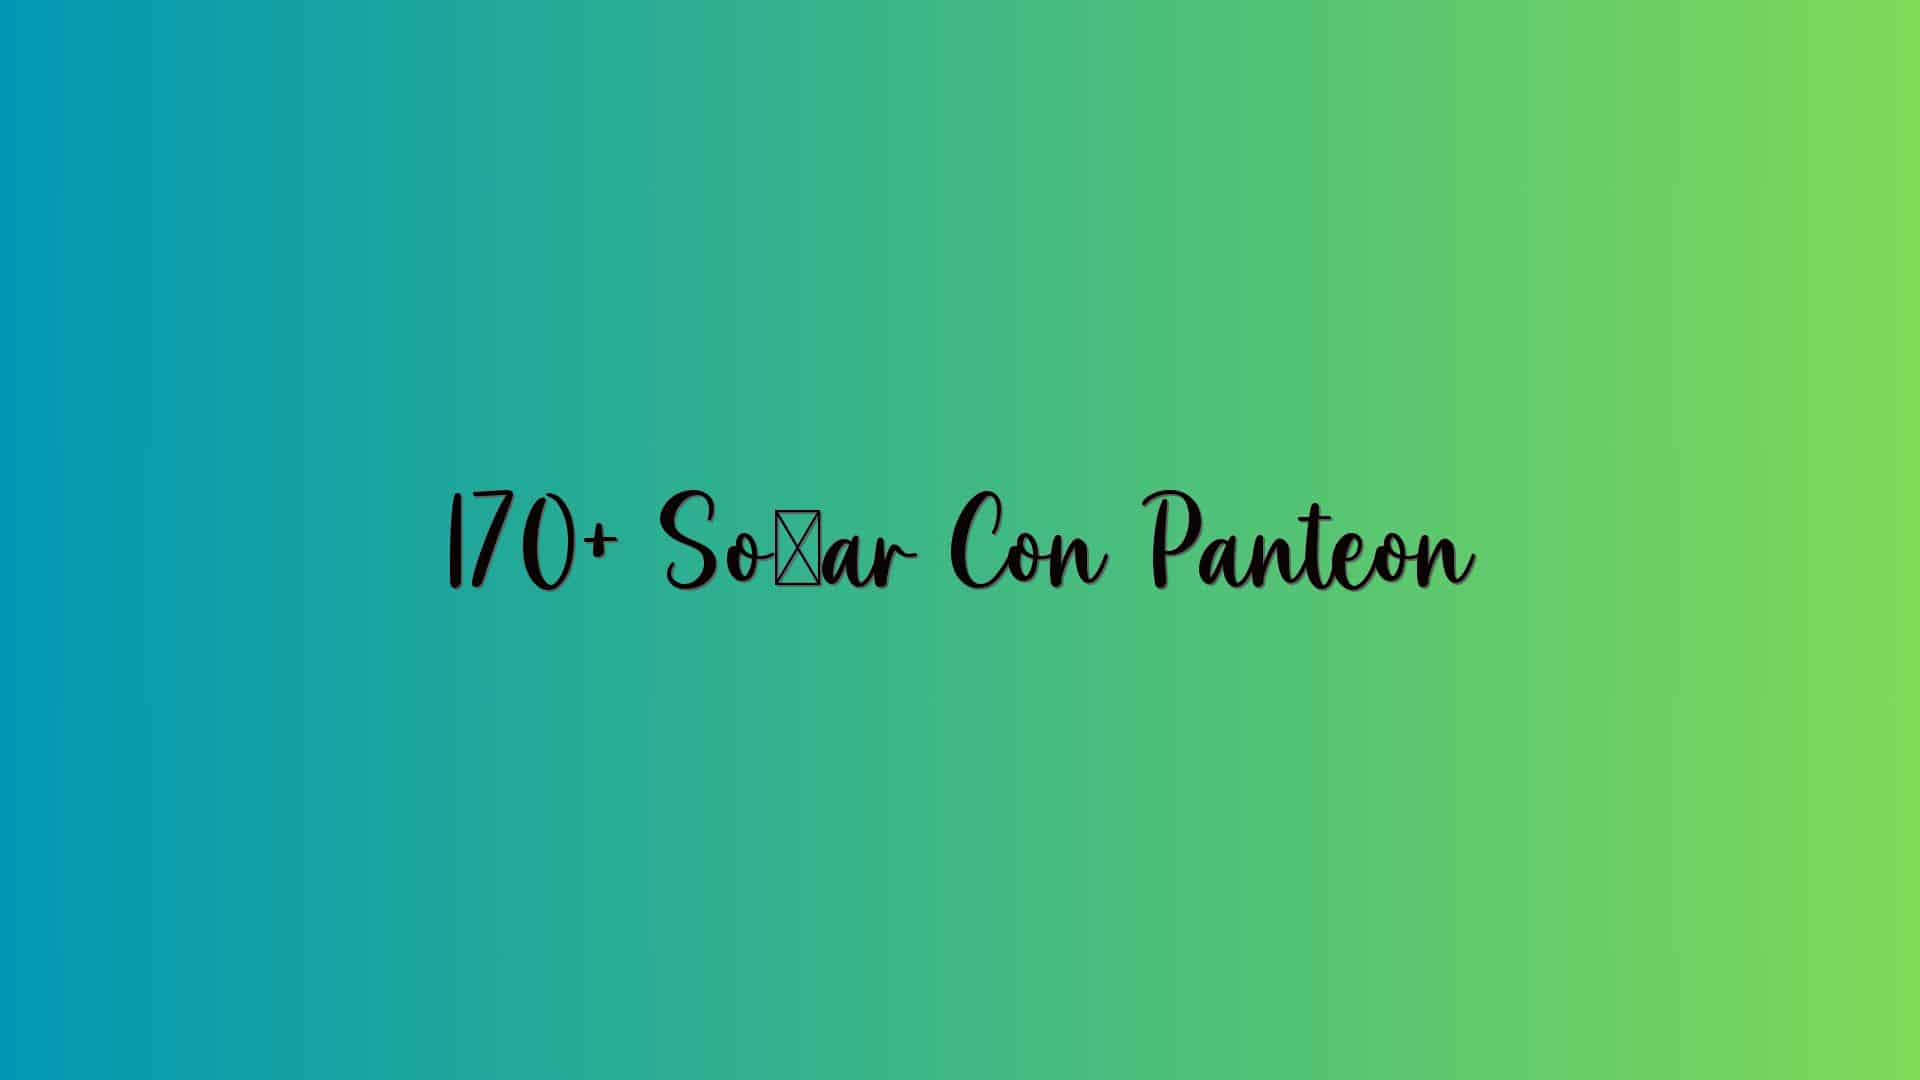 170+ Soñar Con Panteon